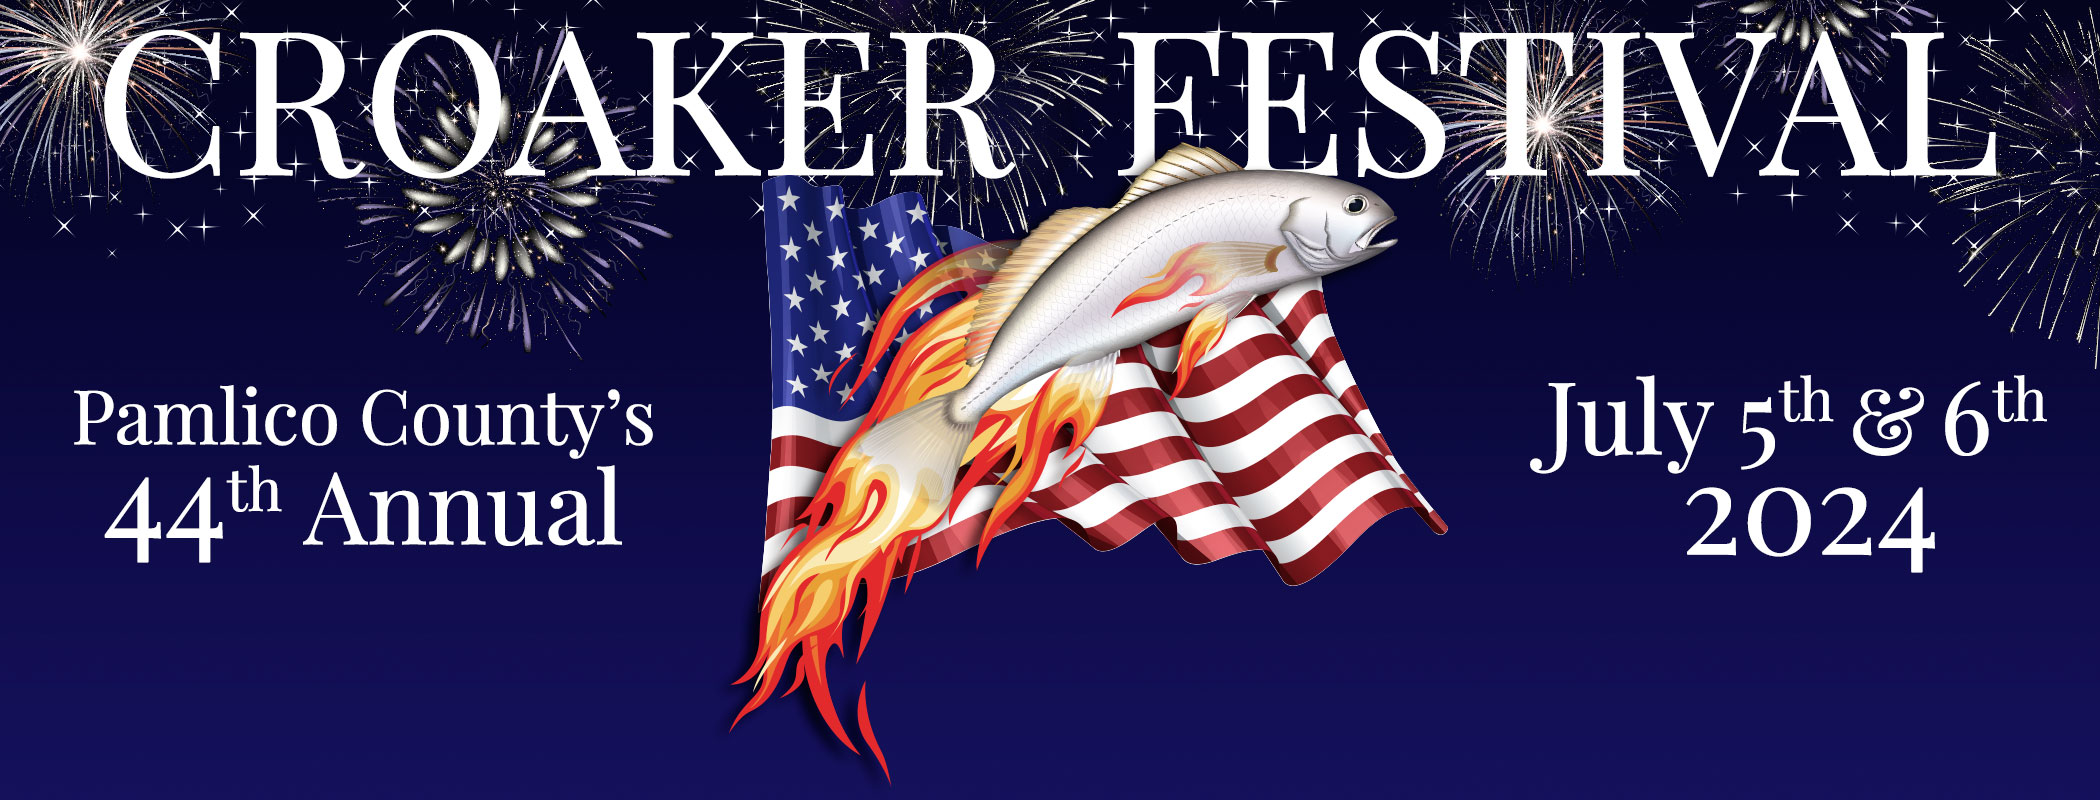 Croaker Festival 2024